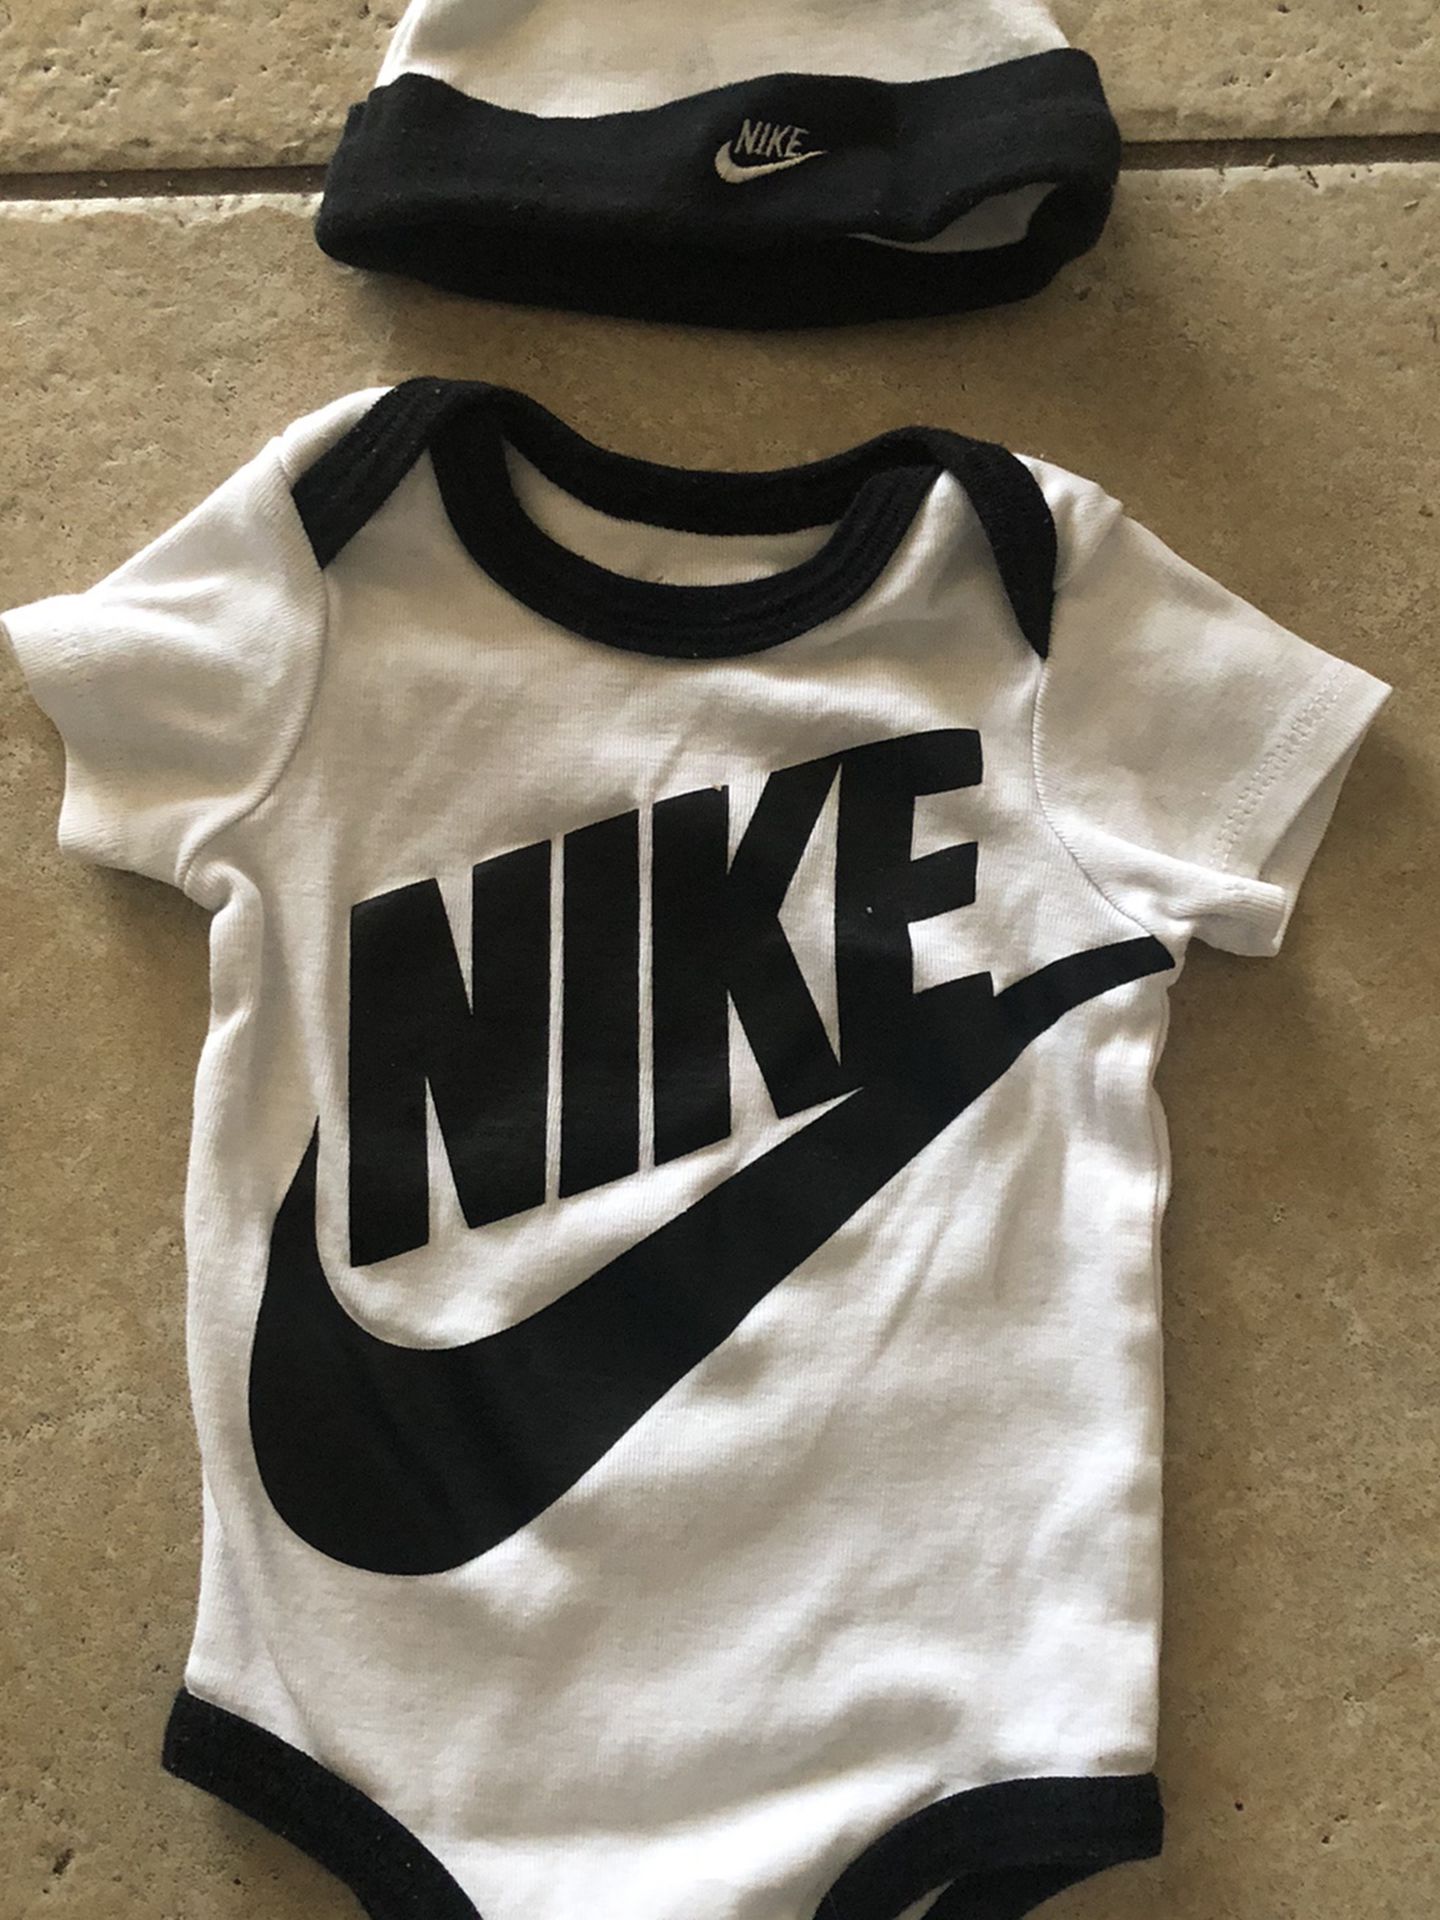 Nike baby boy onesie 0-3 months $5